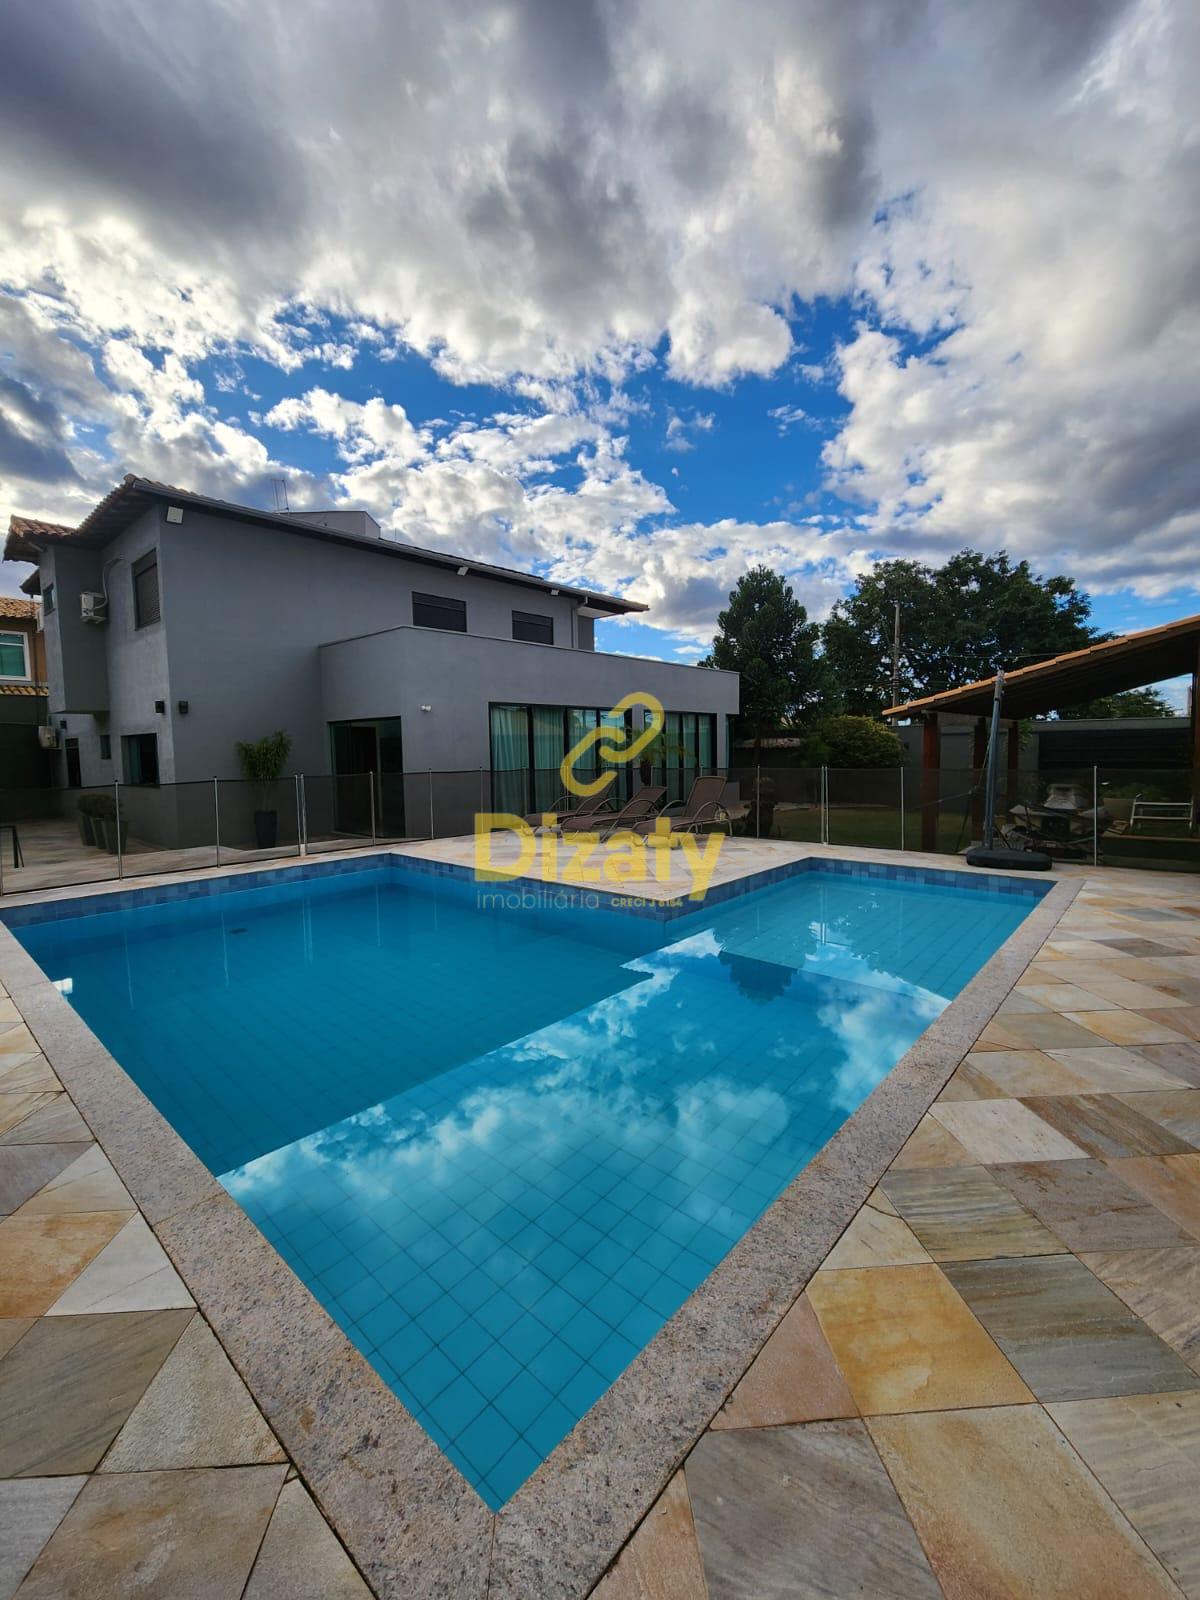 Casa no Bairro Mangabeiras 4 quartos 2 suites lavabo cozinha planejada piscina